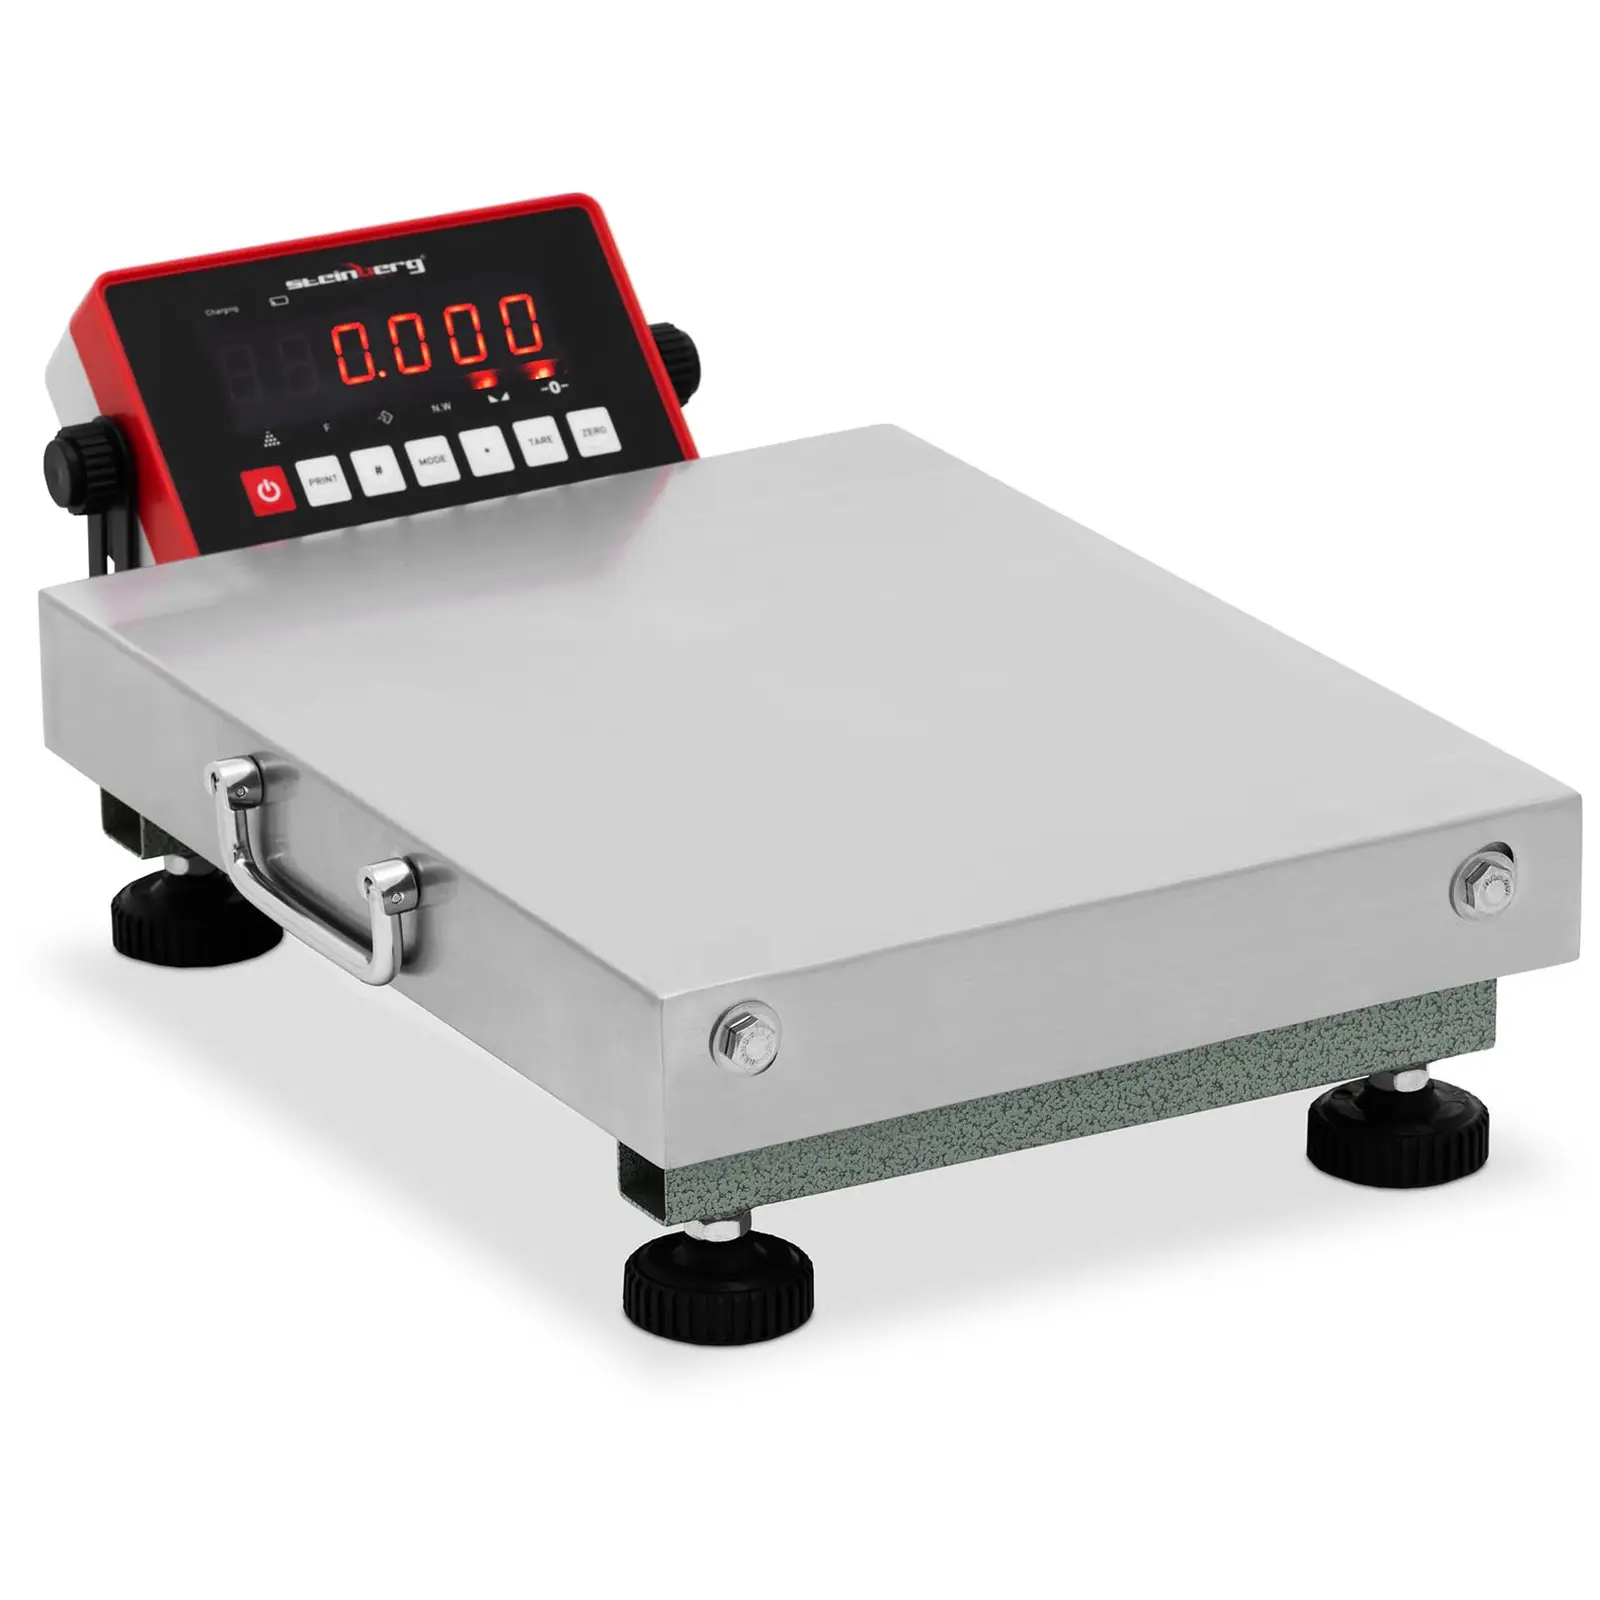 Báscula de plataforma - 150 kg / 0,04 kg - 300 x 400 x 104  mm - kg / lb